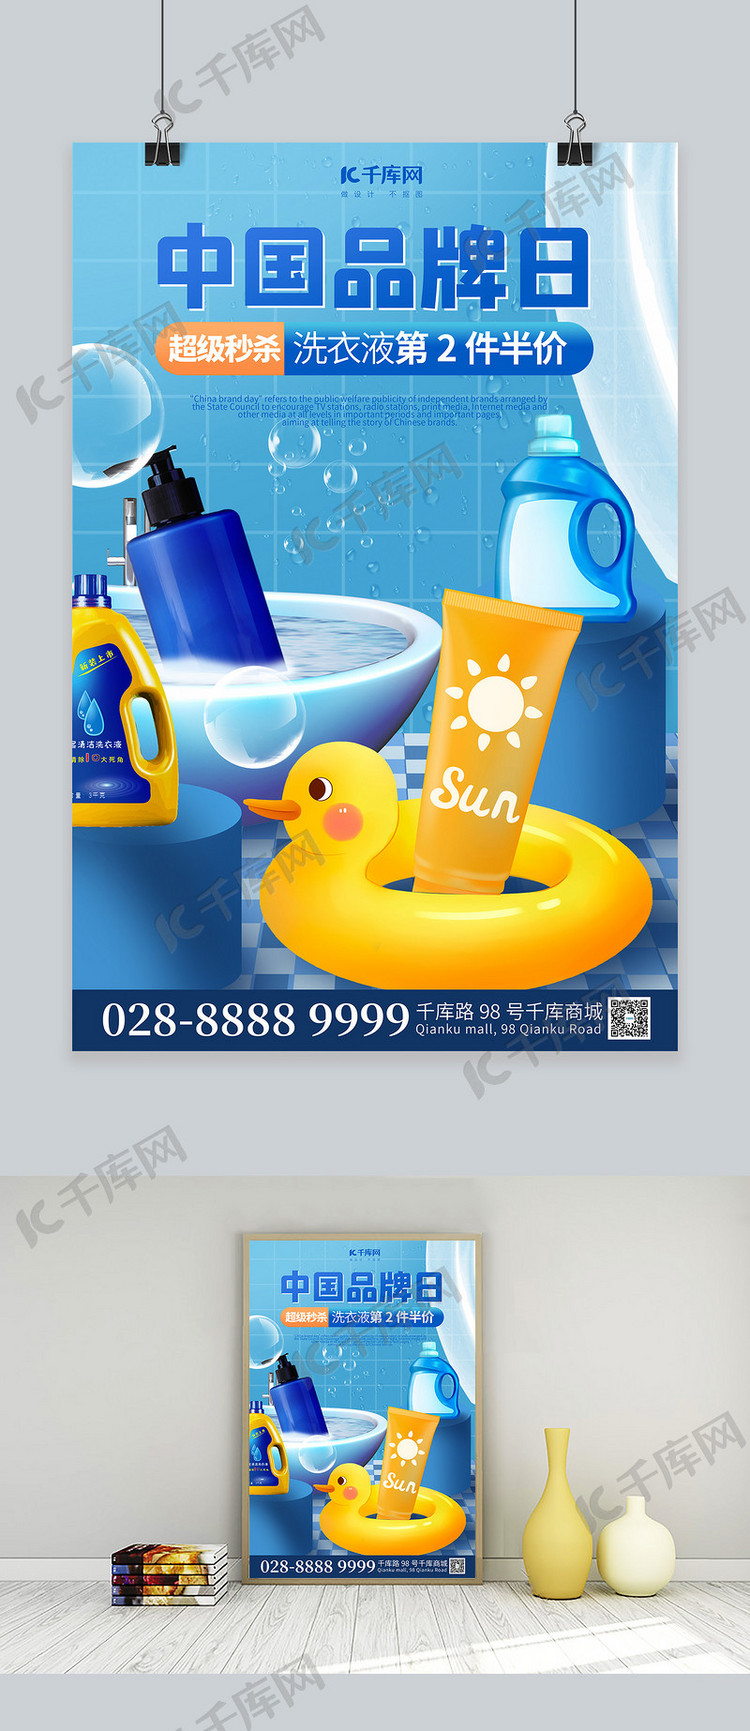 中国品牌日浴室用品简约蓝色海报